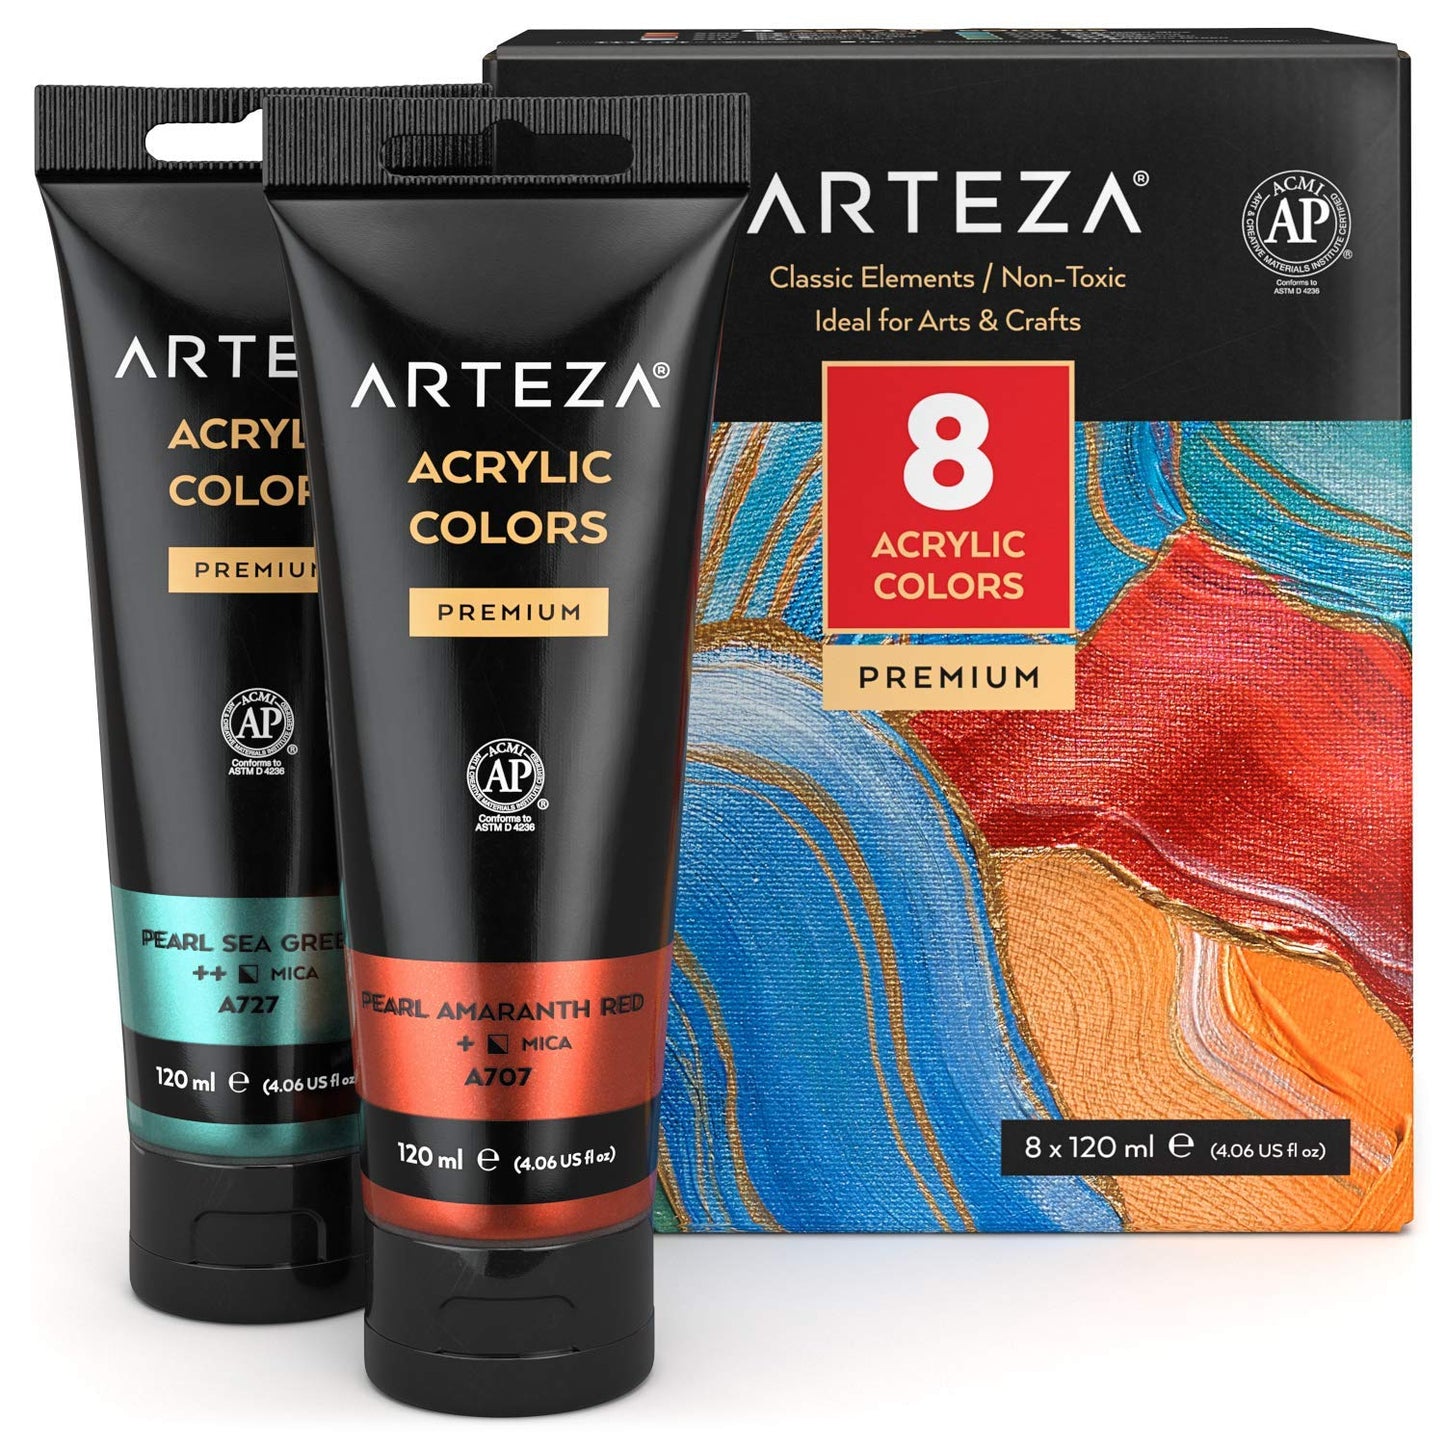 Arteza Metallic Acrylic Paint, Classic Elements, 4oz Tubes - Set of 8